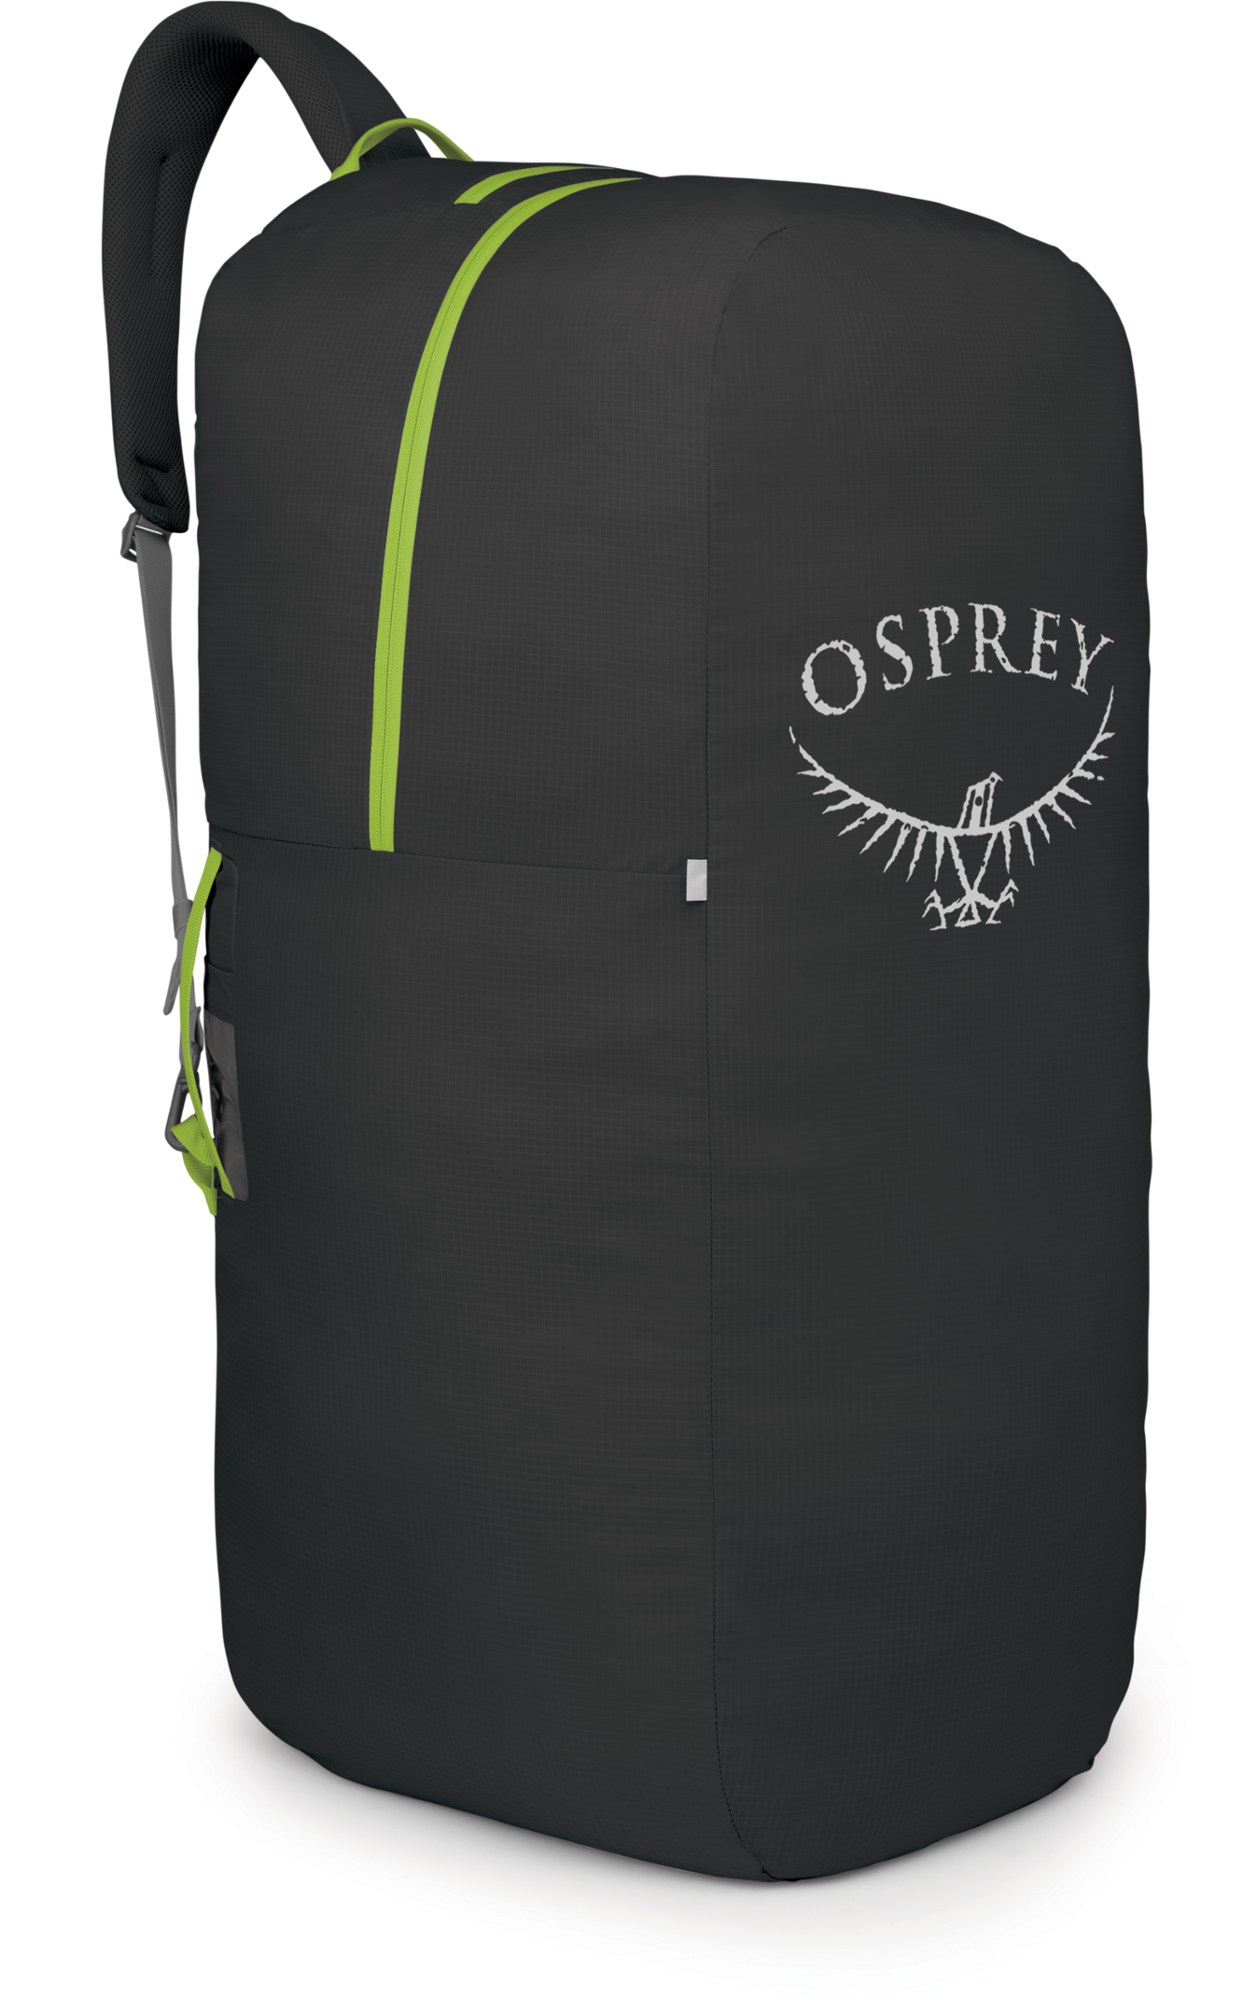 Сумка-рюкзак AirPorter LZ — средний размер Osprey, черный